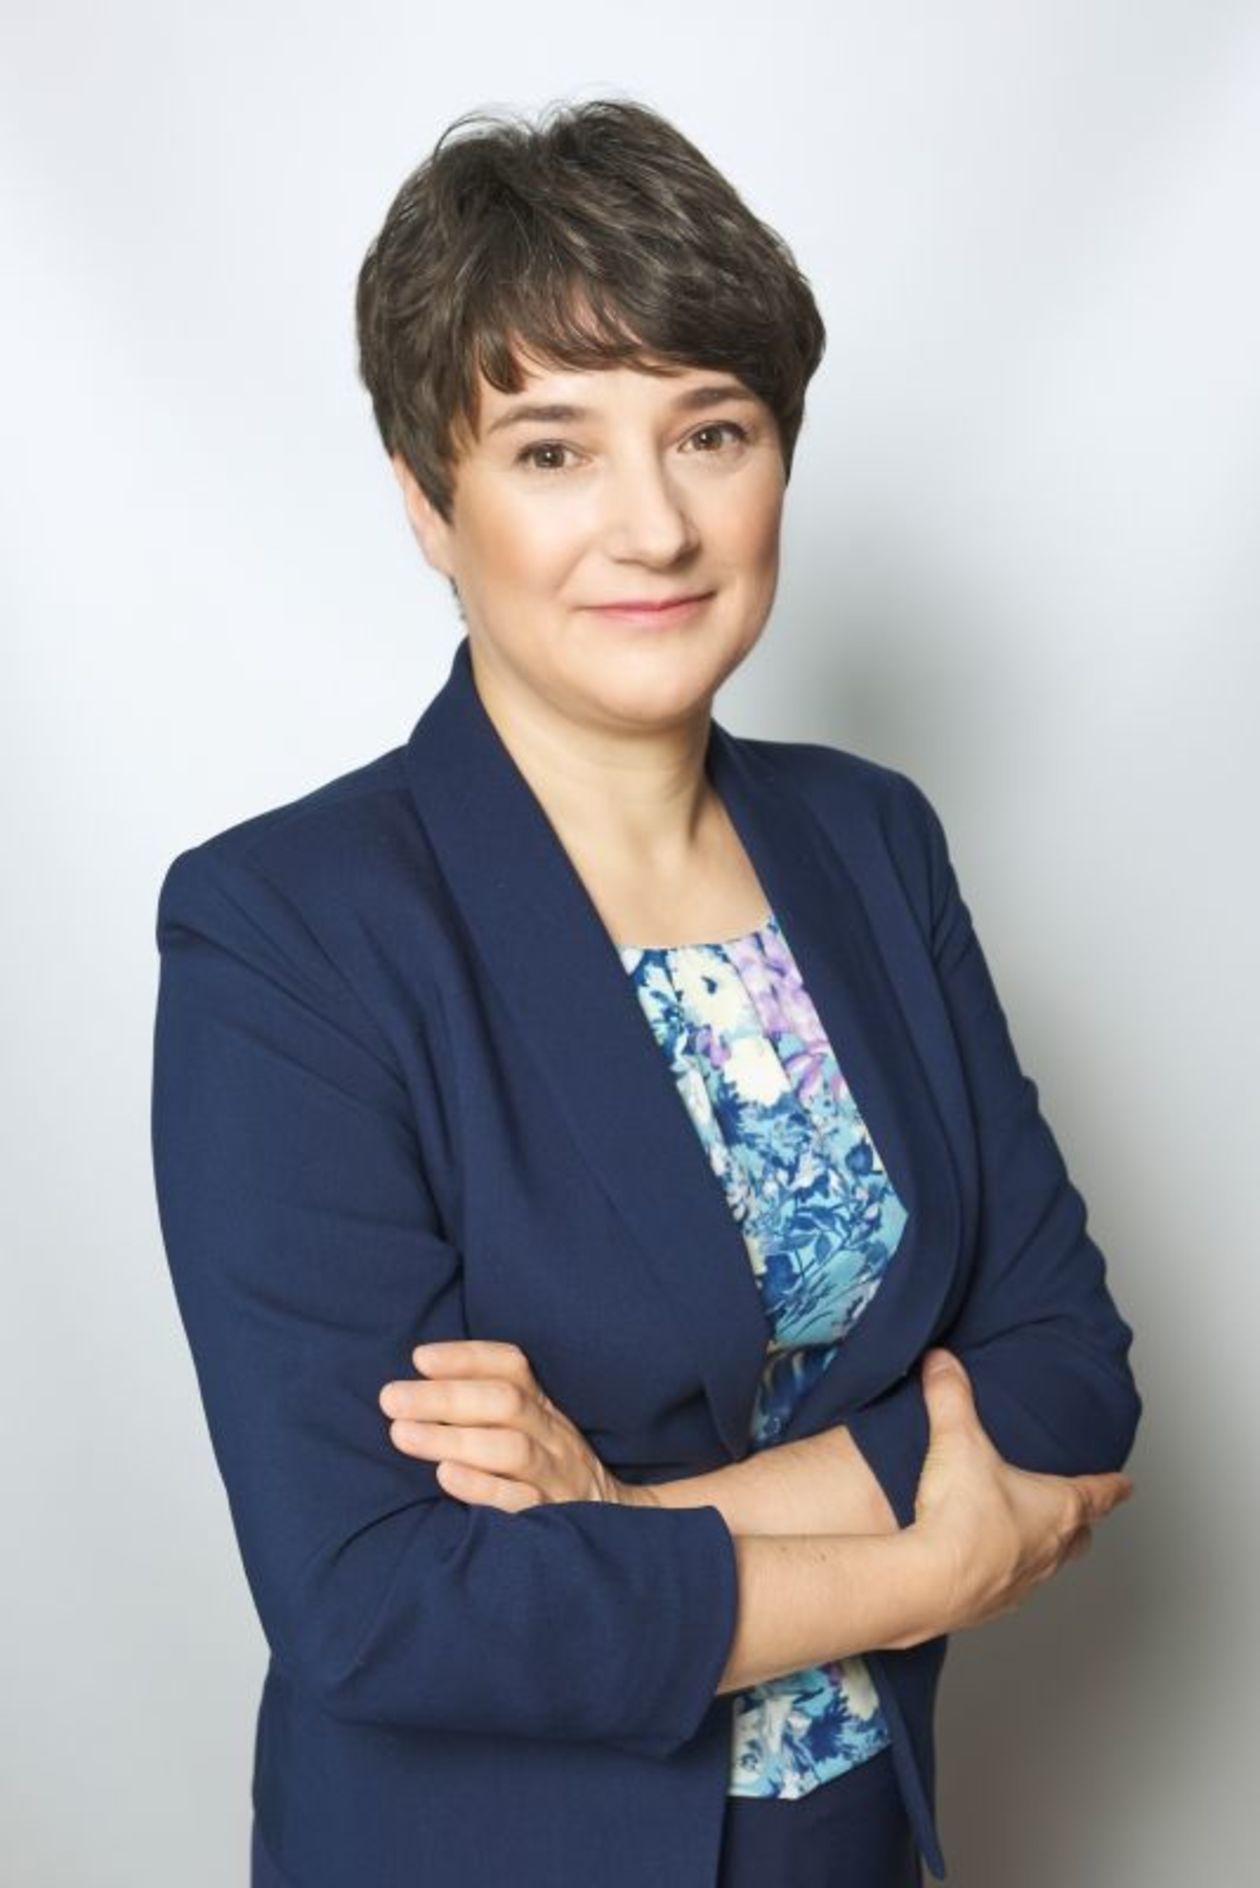  <p>Prof. Dorota Kołodńska</p>